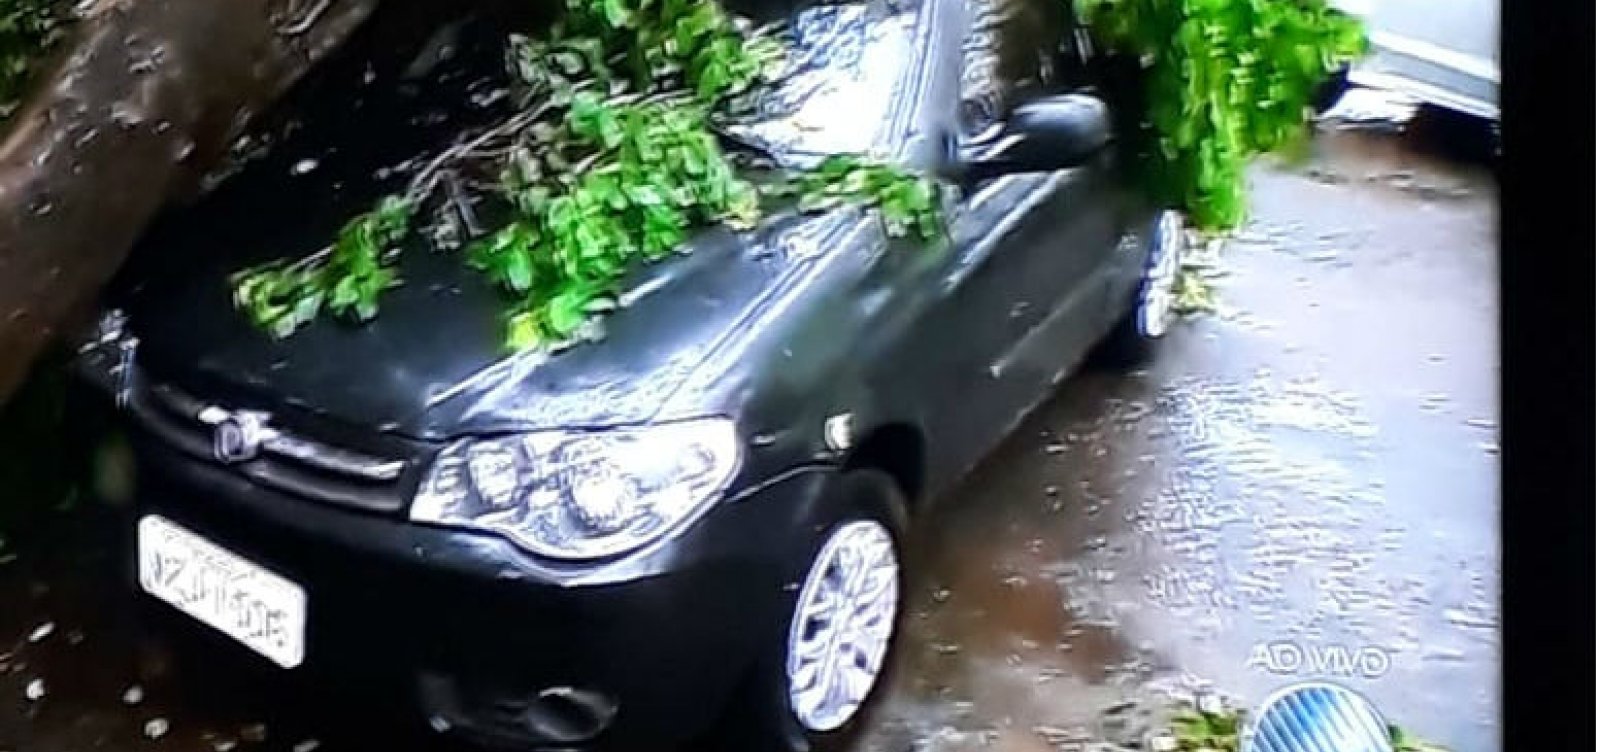 Após chuvas, árvore cai em cima de carro na Pituba